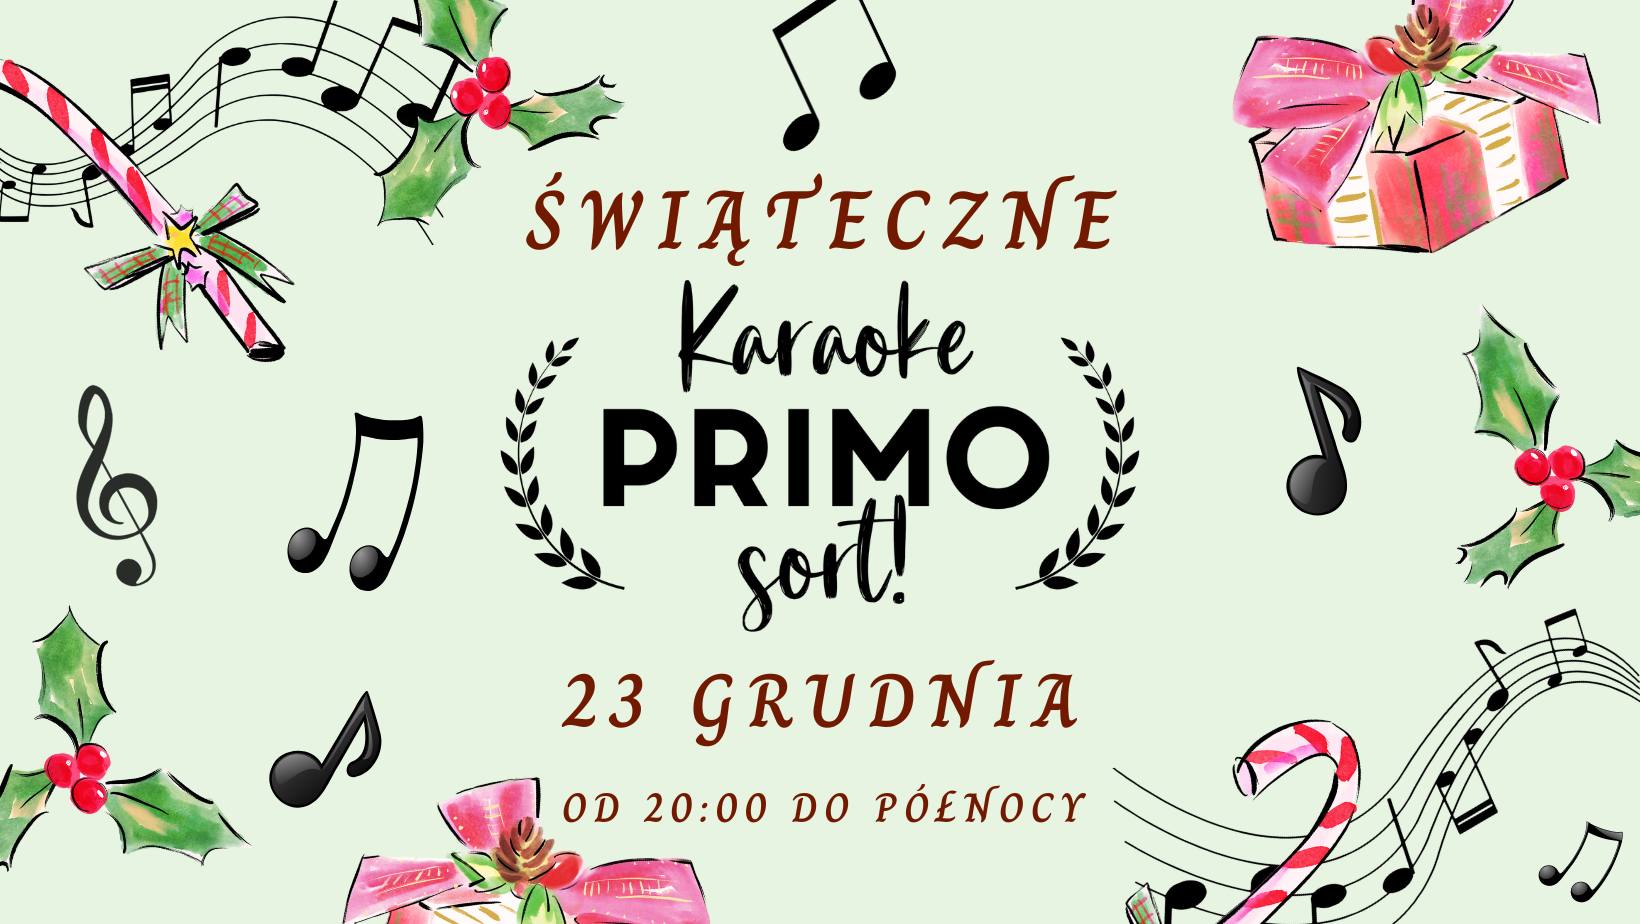 Świąteczne Karaoke PRIMO Sort!